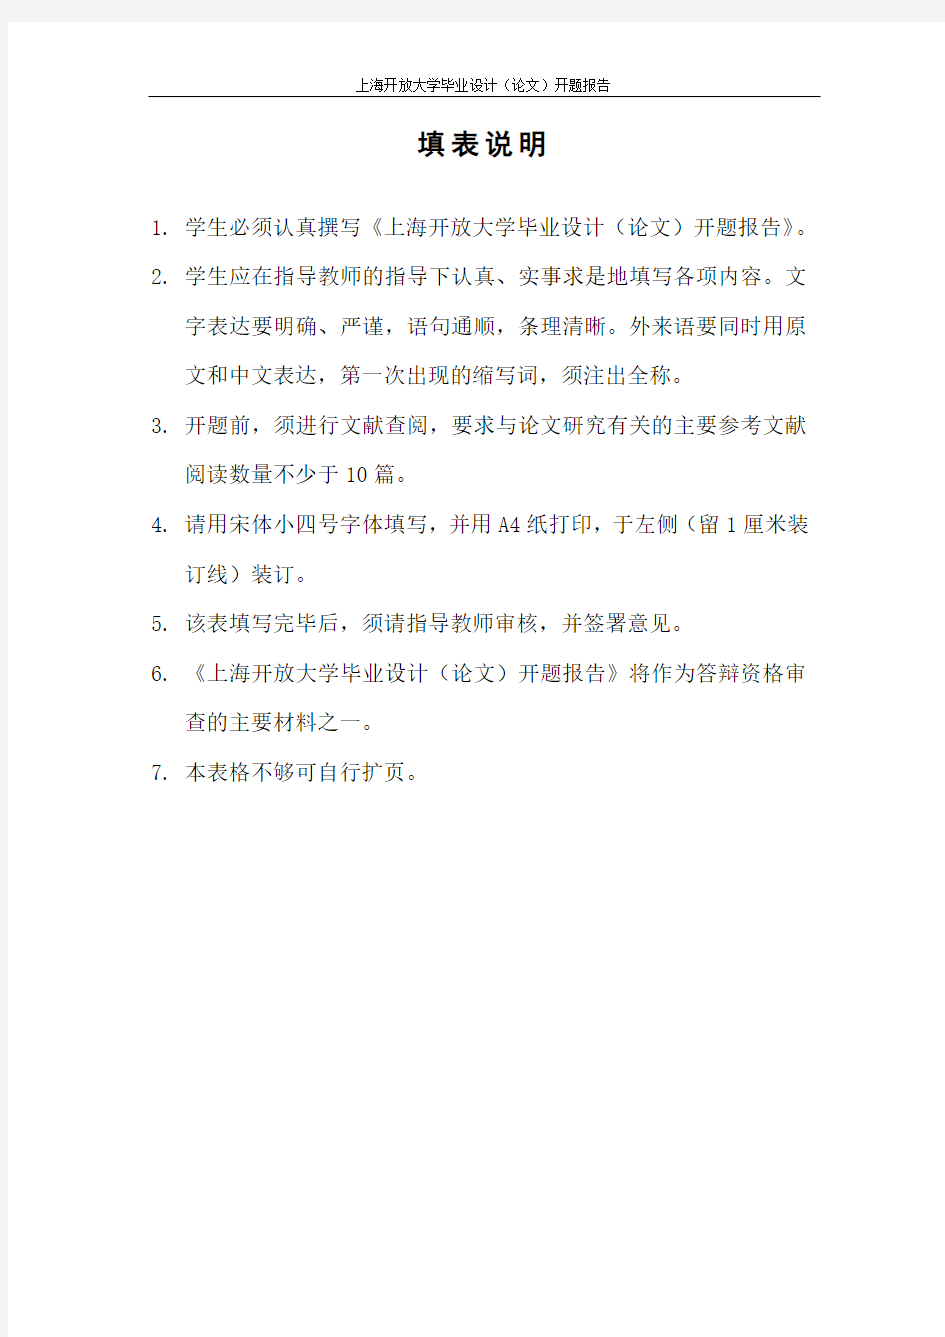 上海开放大学毕业设计(论文)开题报告样例(理工类)